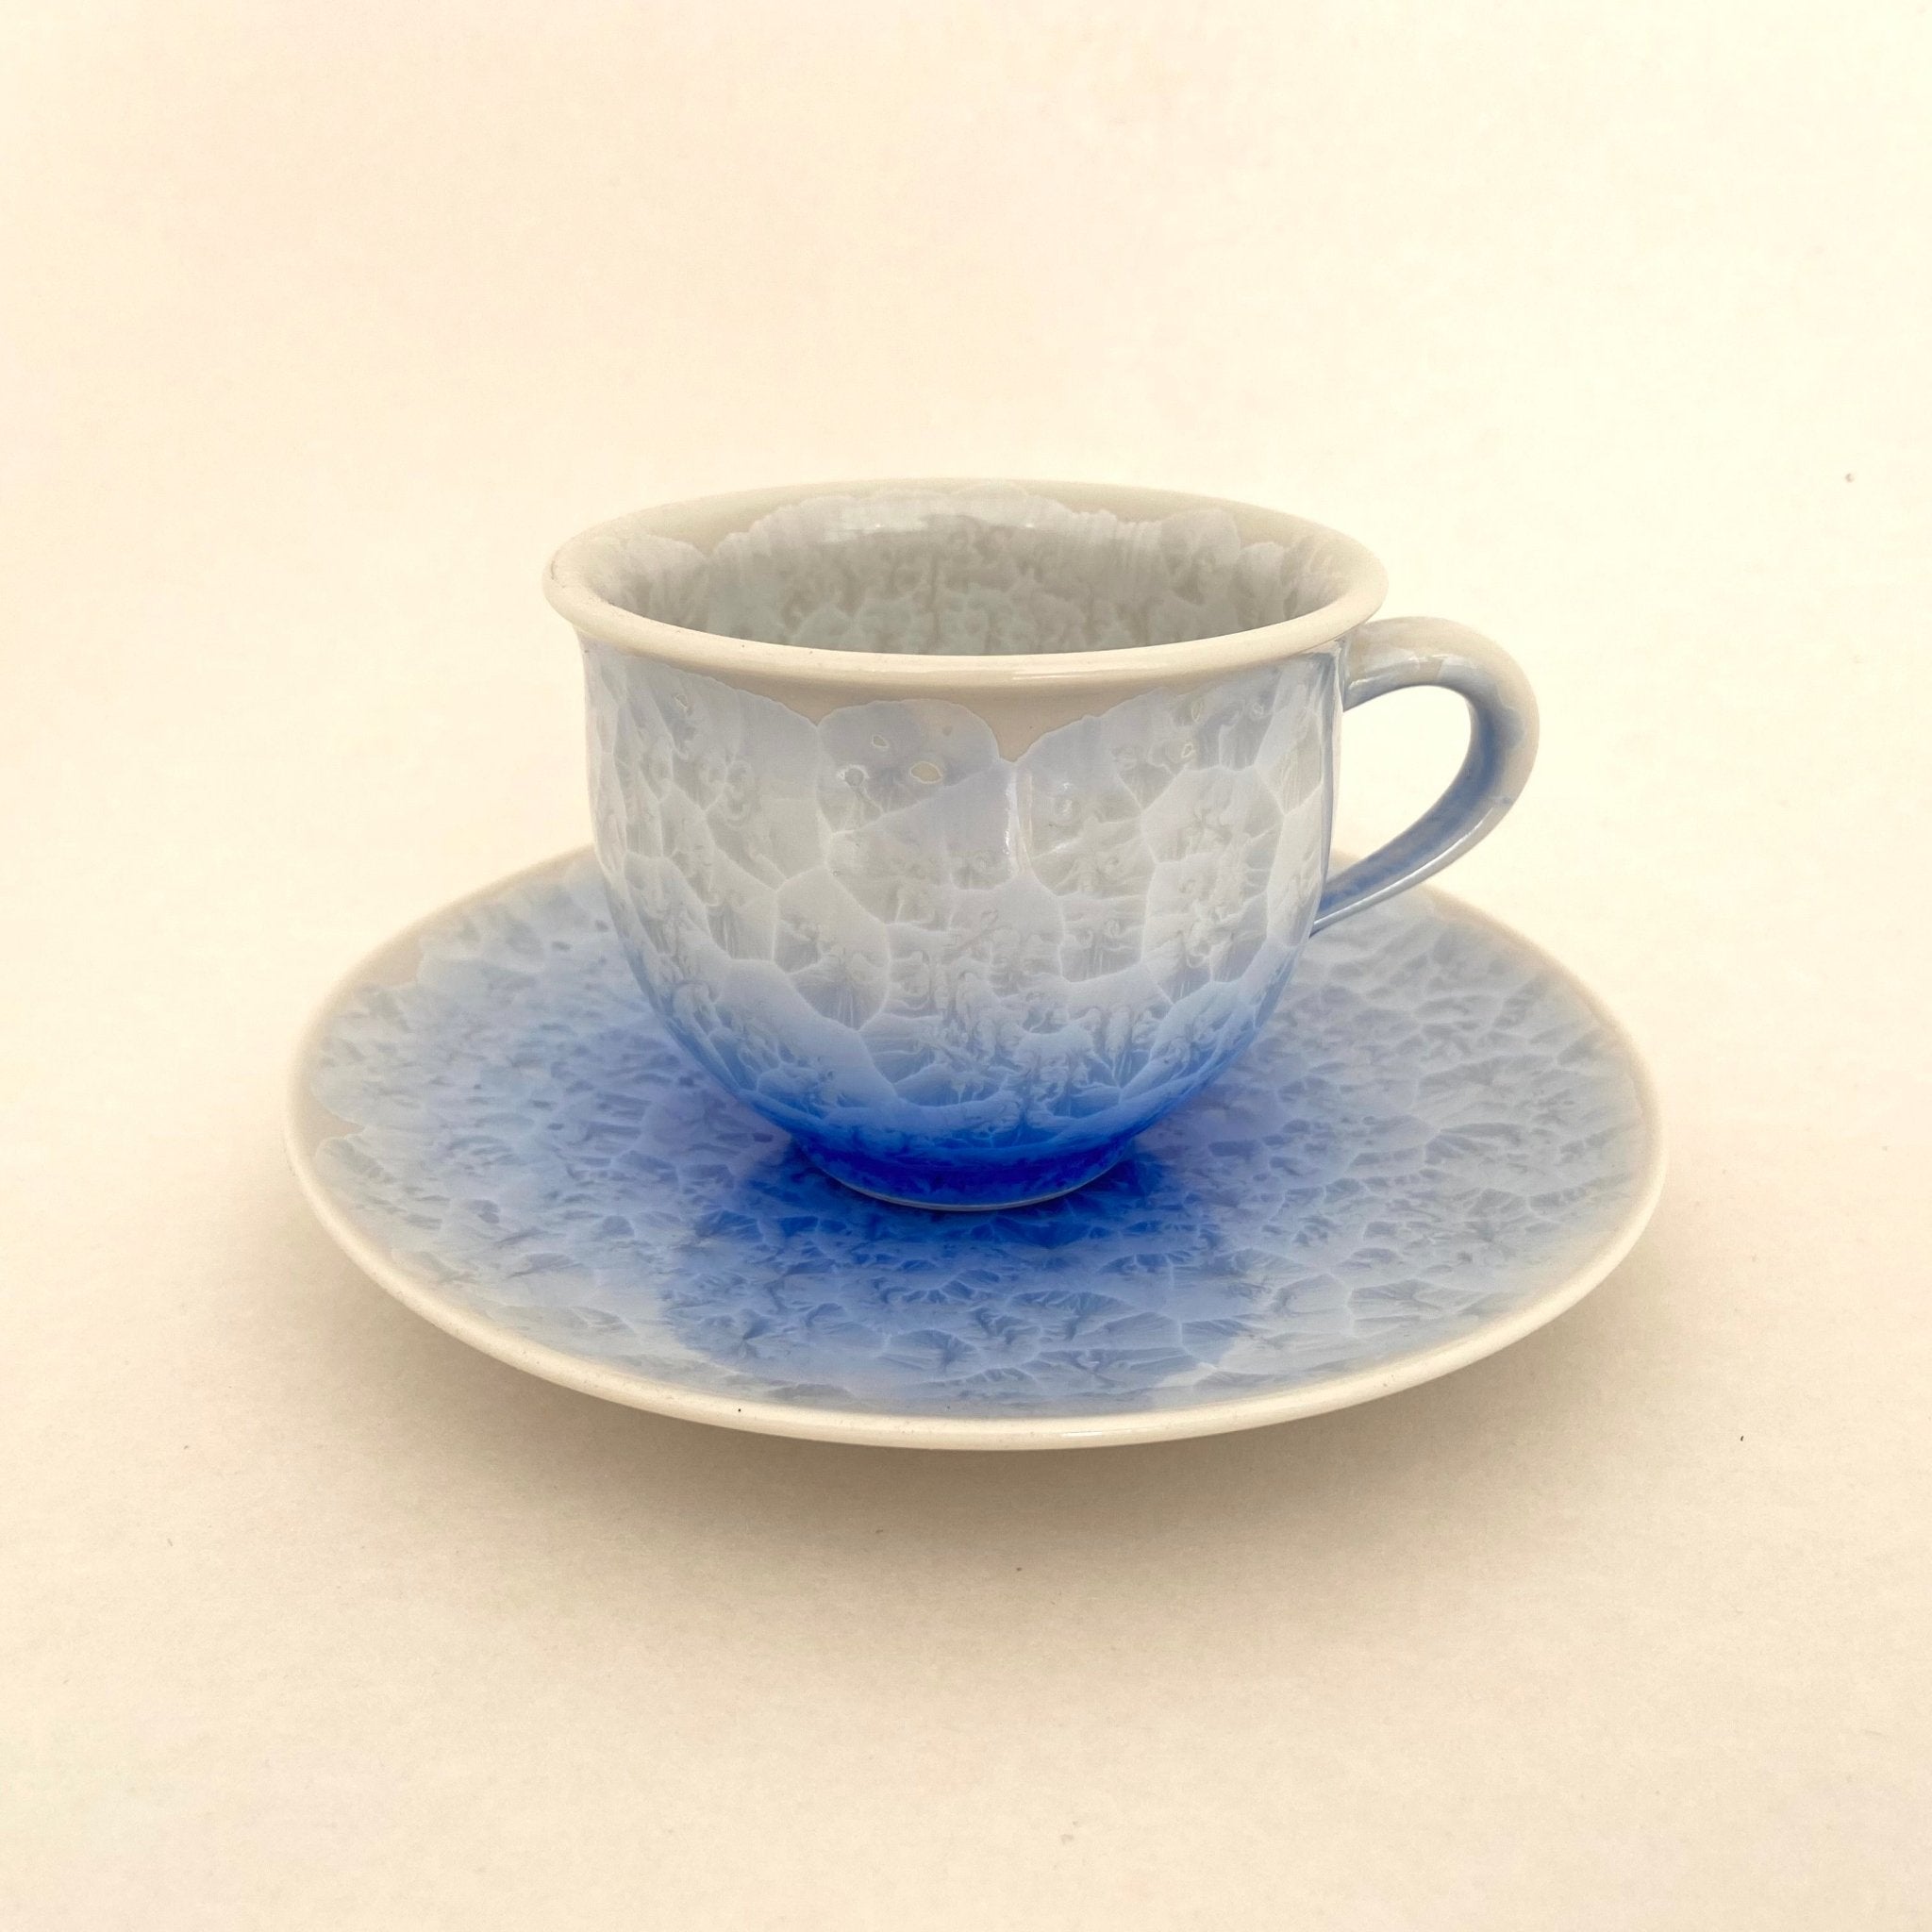 https://tearepertoire.com/cdn/shop/products/blue-flower-crystal-tea-cup-saucer-640182_2048x.jpg?v=1661608100